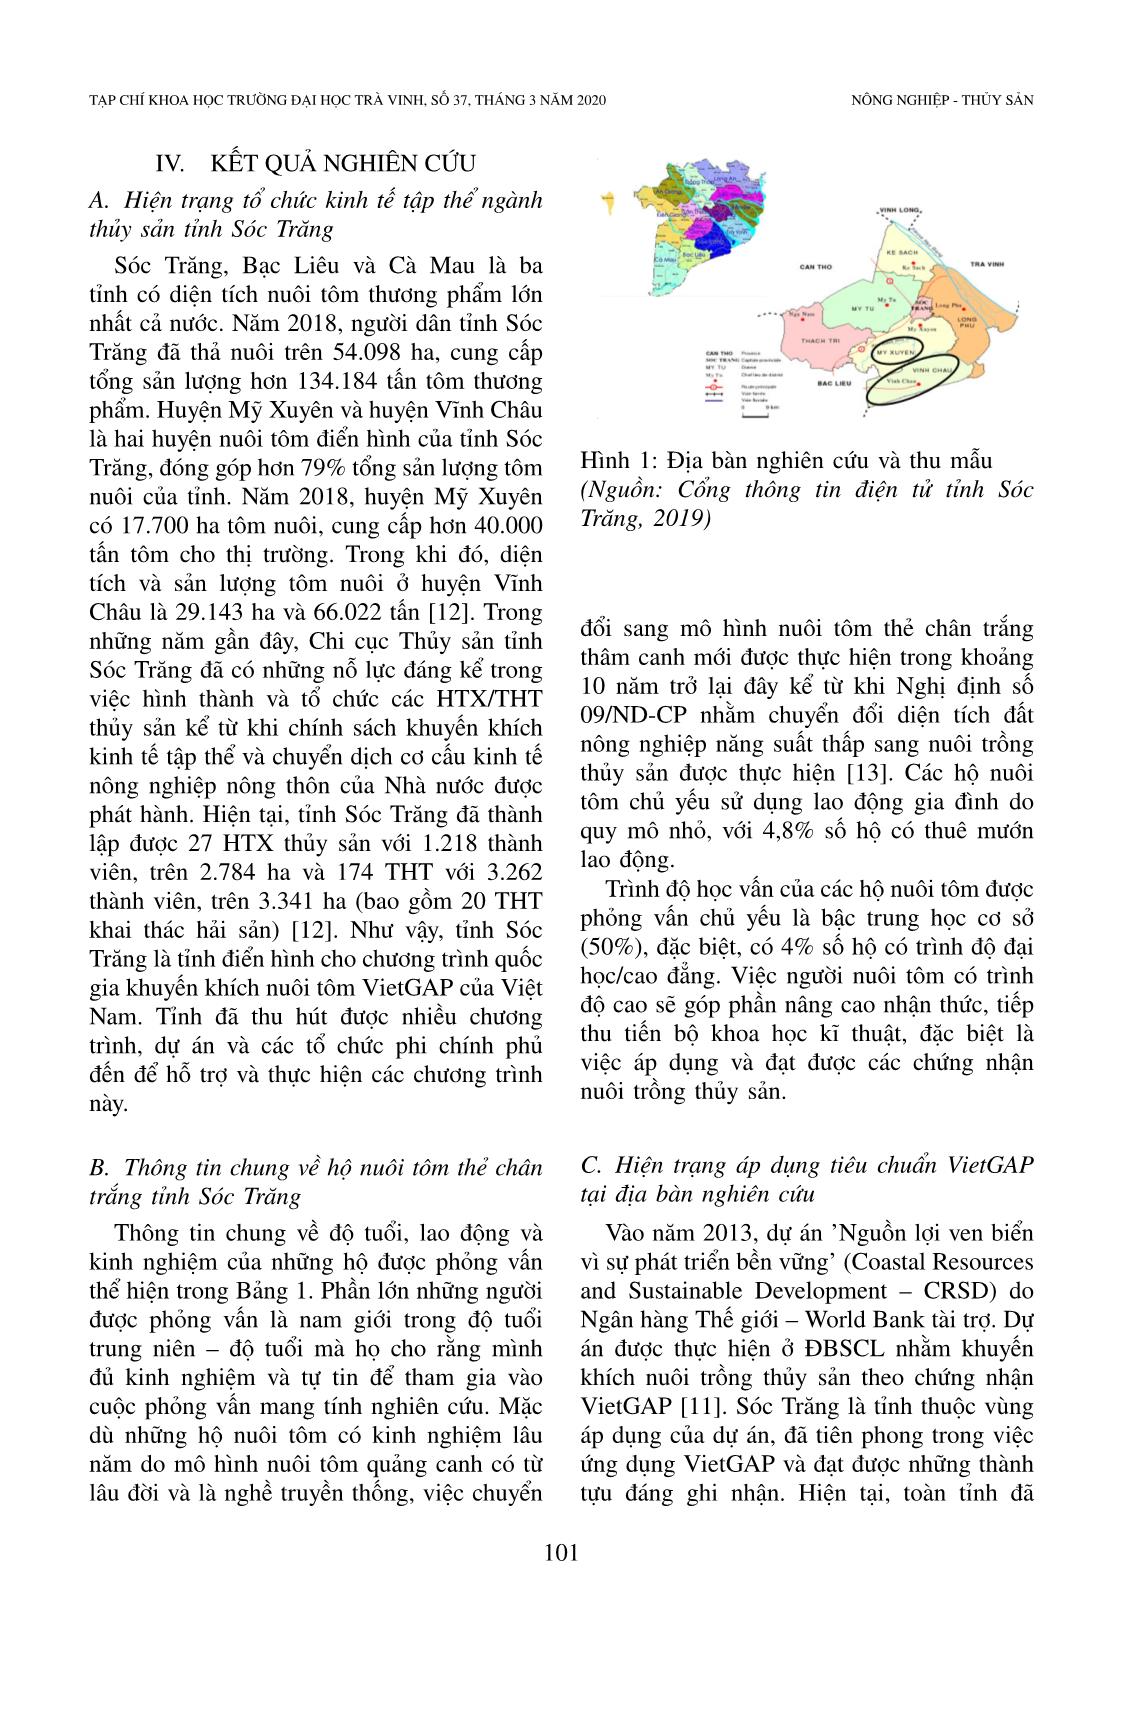 Hiện trạng và vai trò của chứng nhận Vietgap trong nuôi tôm: Nghiên cứu trường hợp nuôi tôm thẻ chân trắng ở tỉnh Sóc Trăng, Việt Nam trang 4